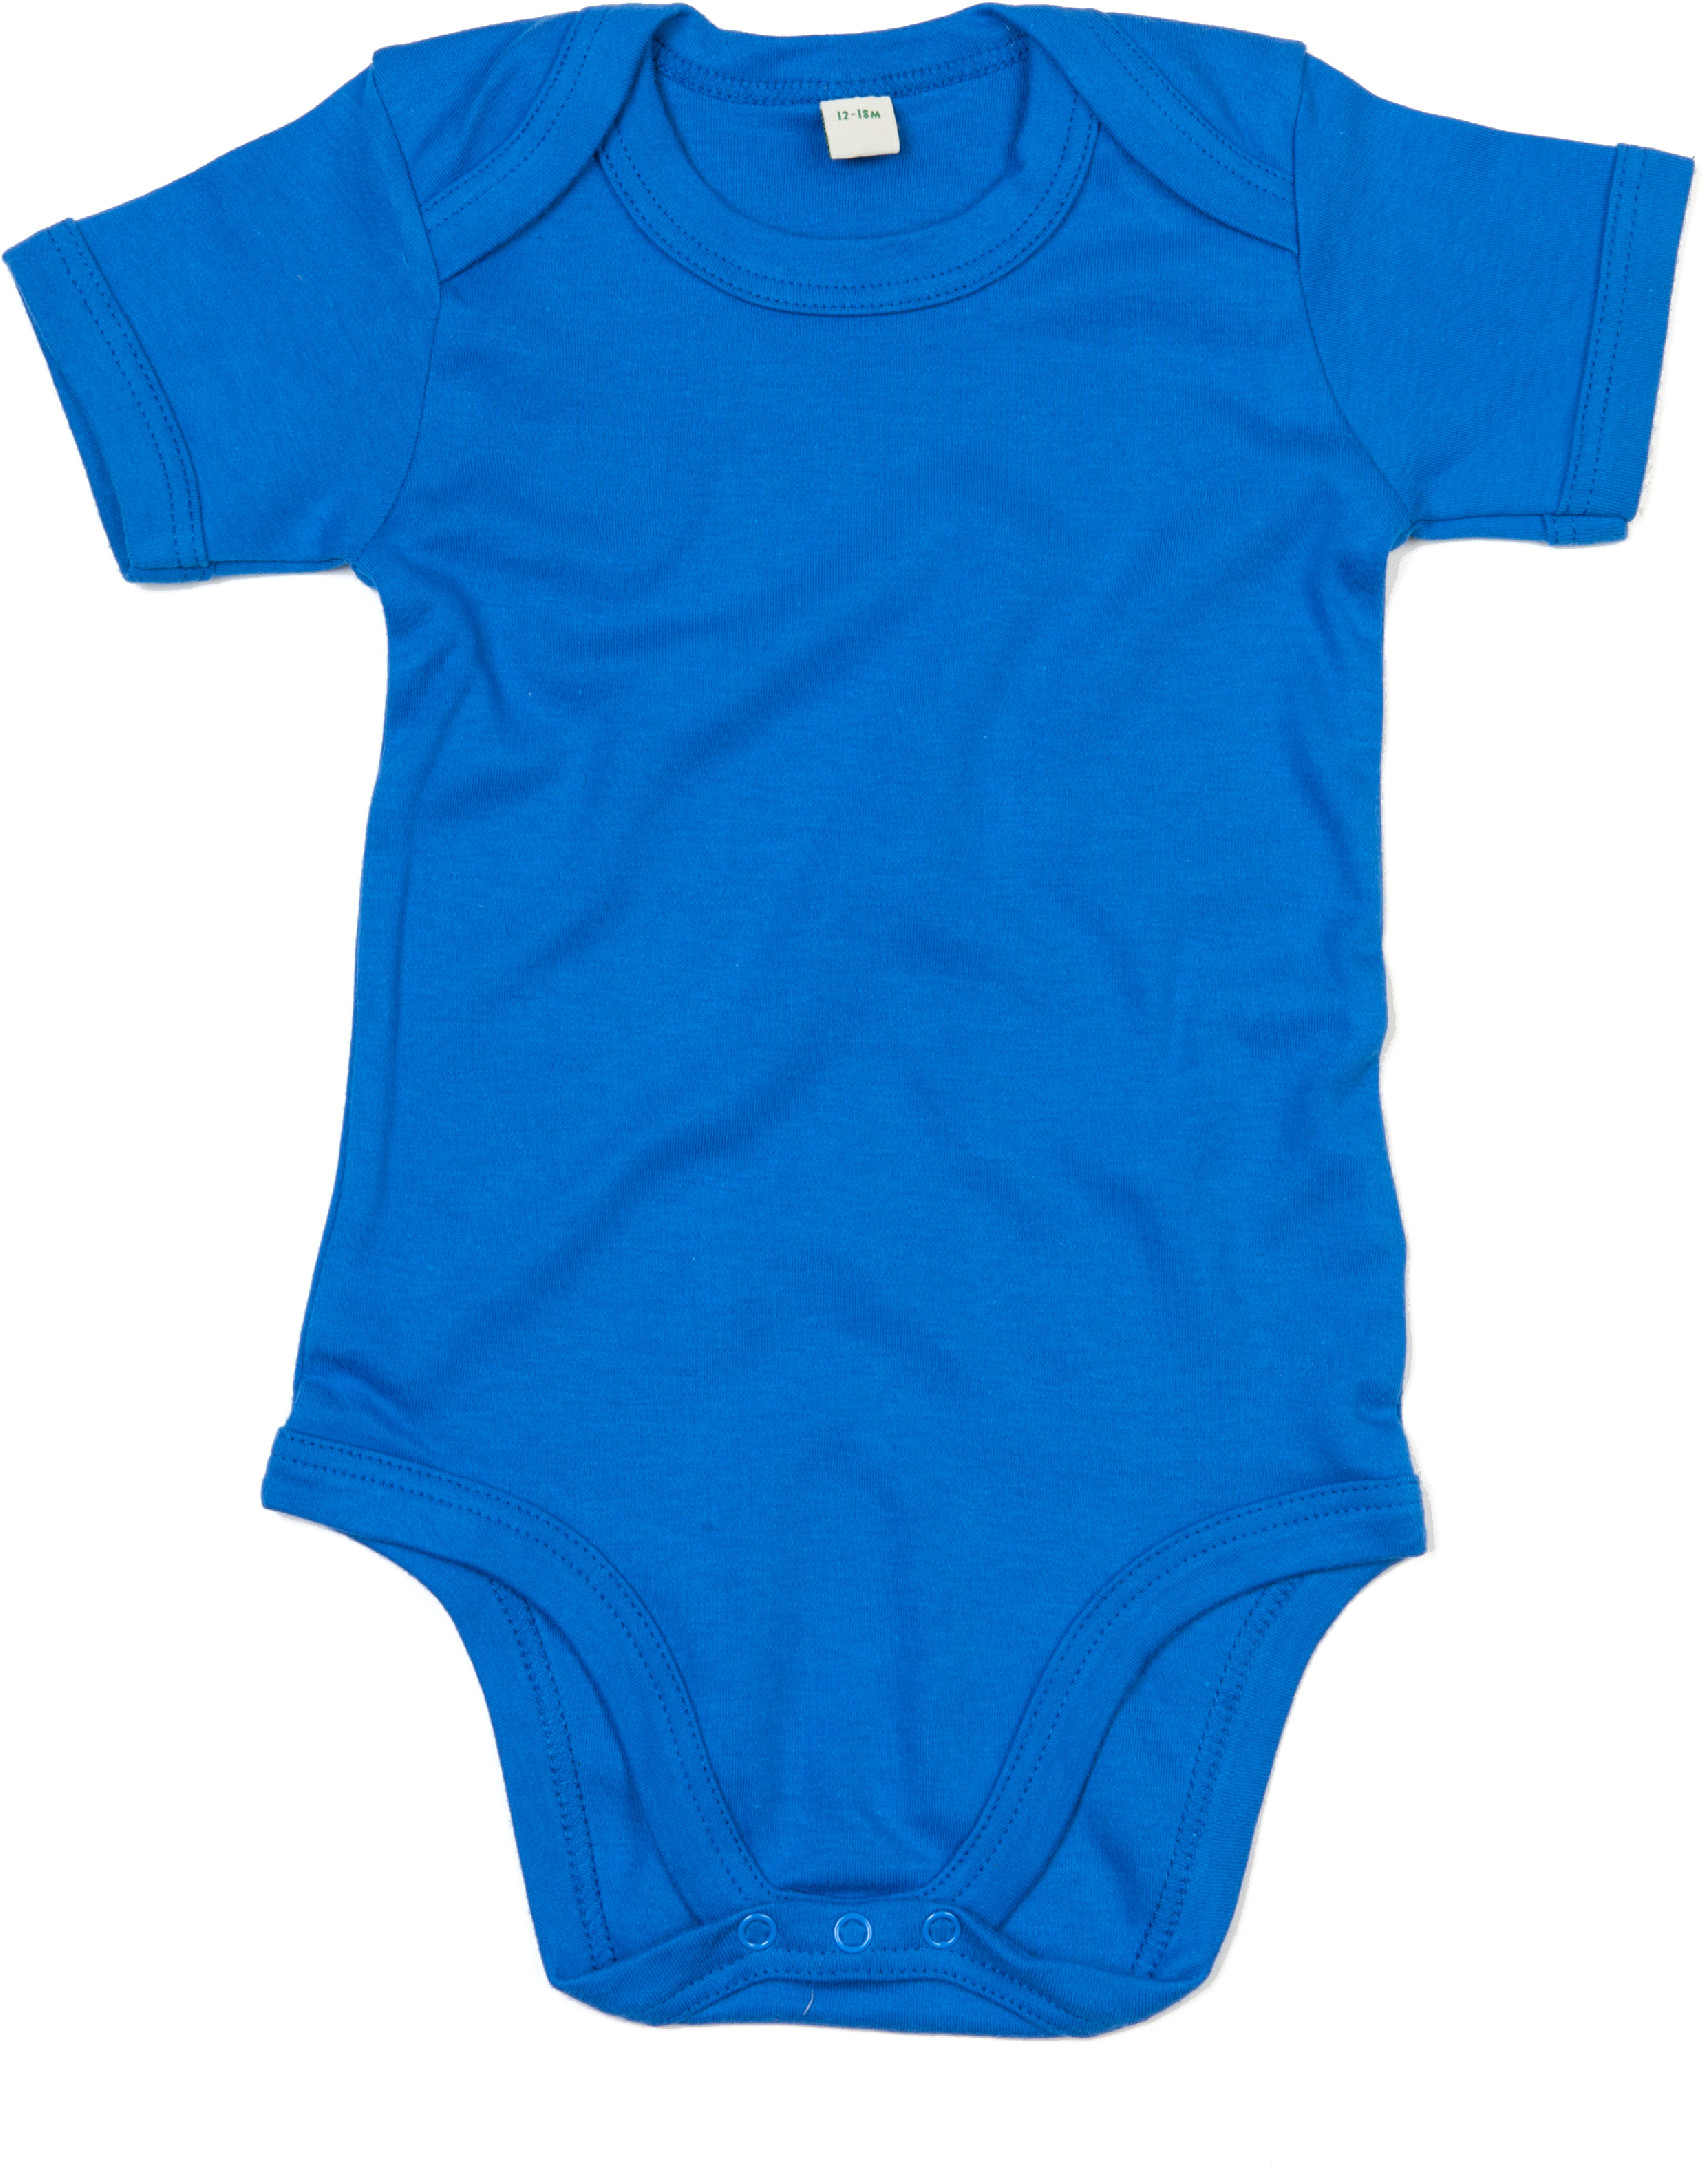 Dětské body BZ10 Barva: snorkel blue, Velikost: 12-18 měsíců